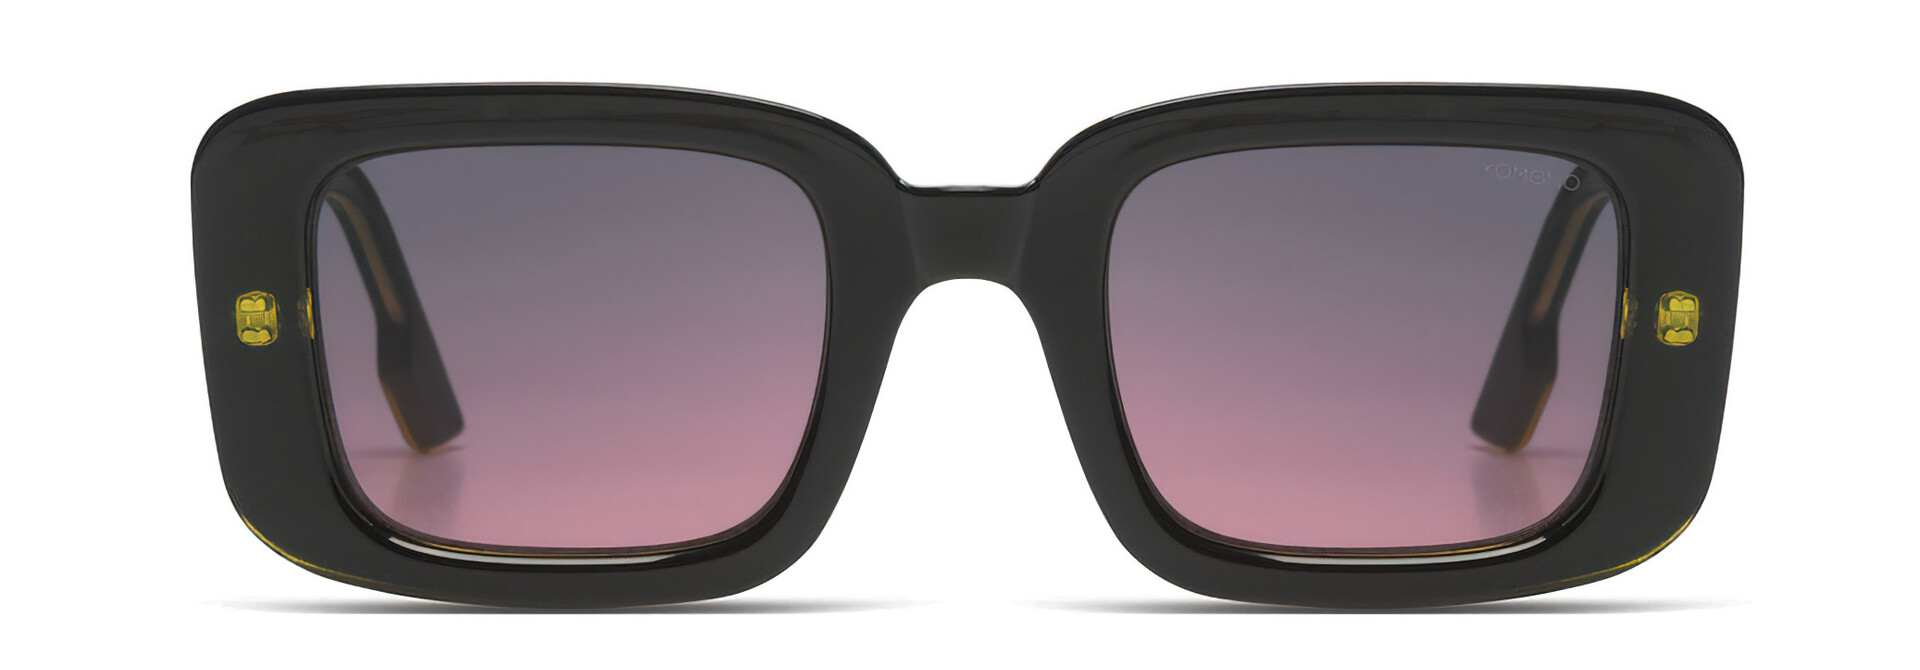 ♣ Avery Matrix Sunglasses